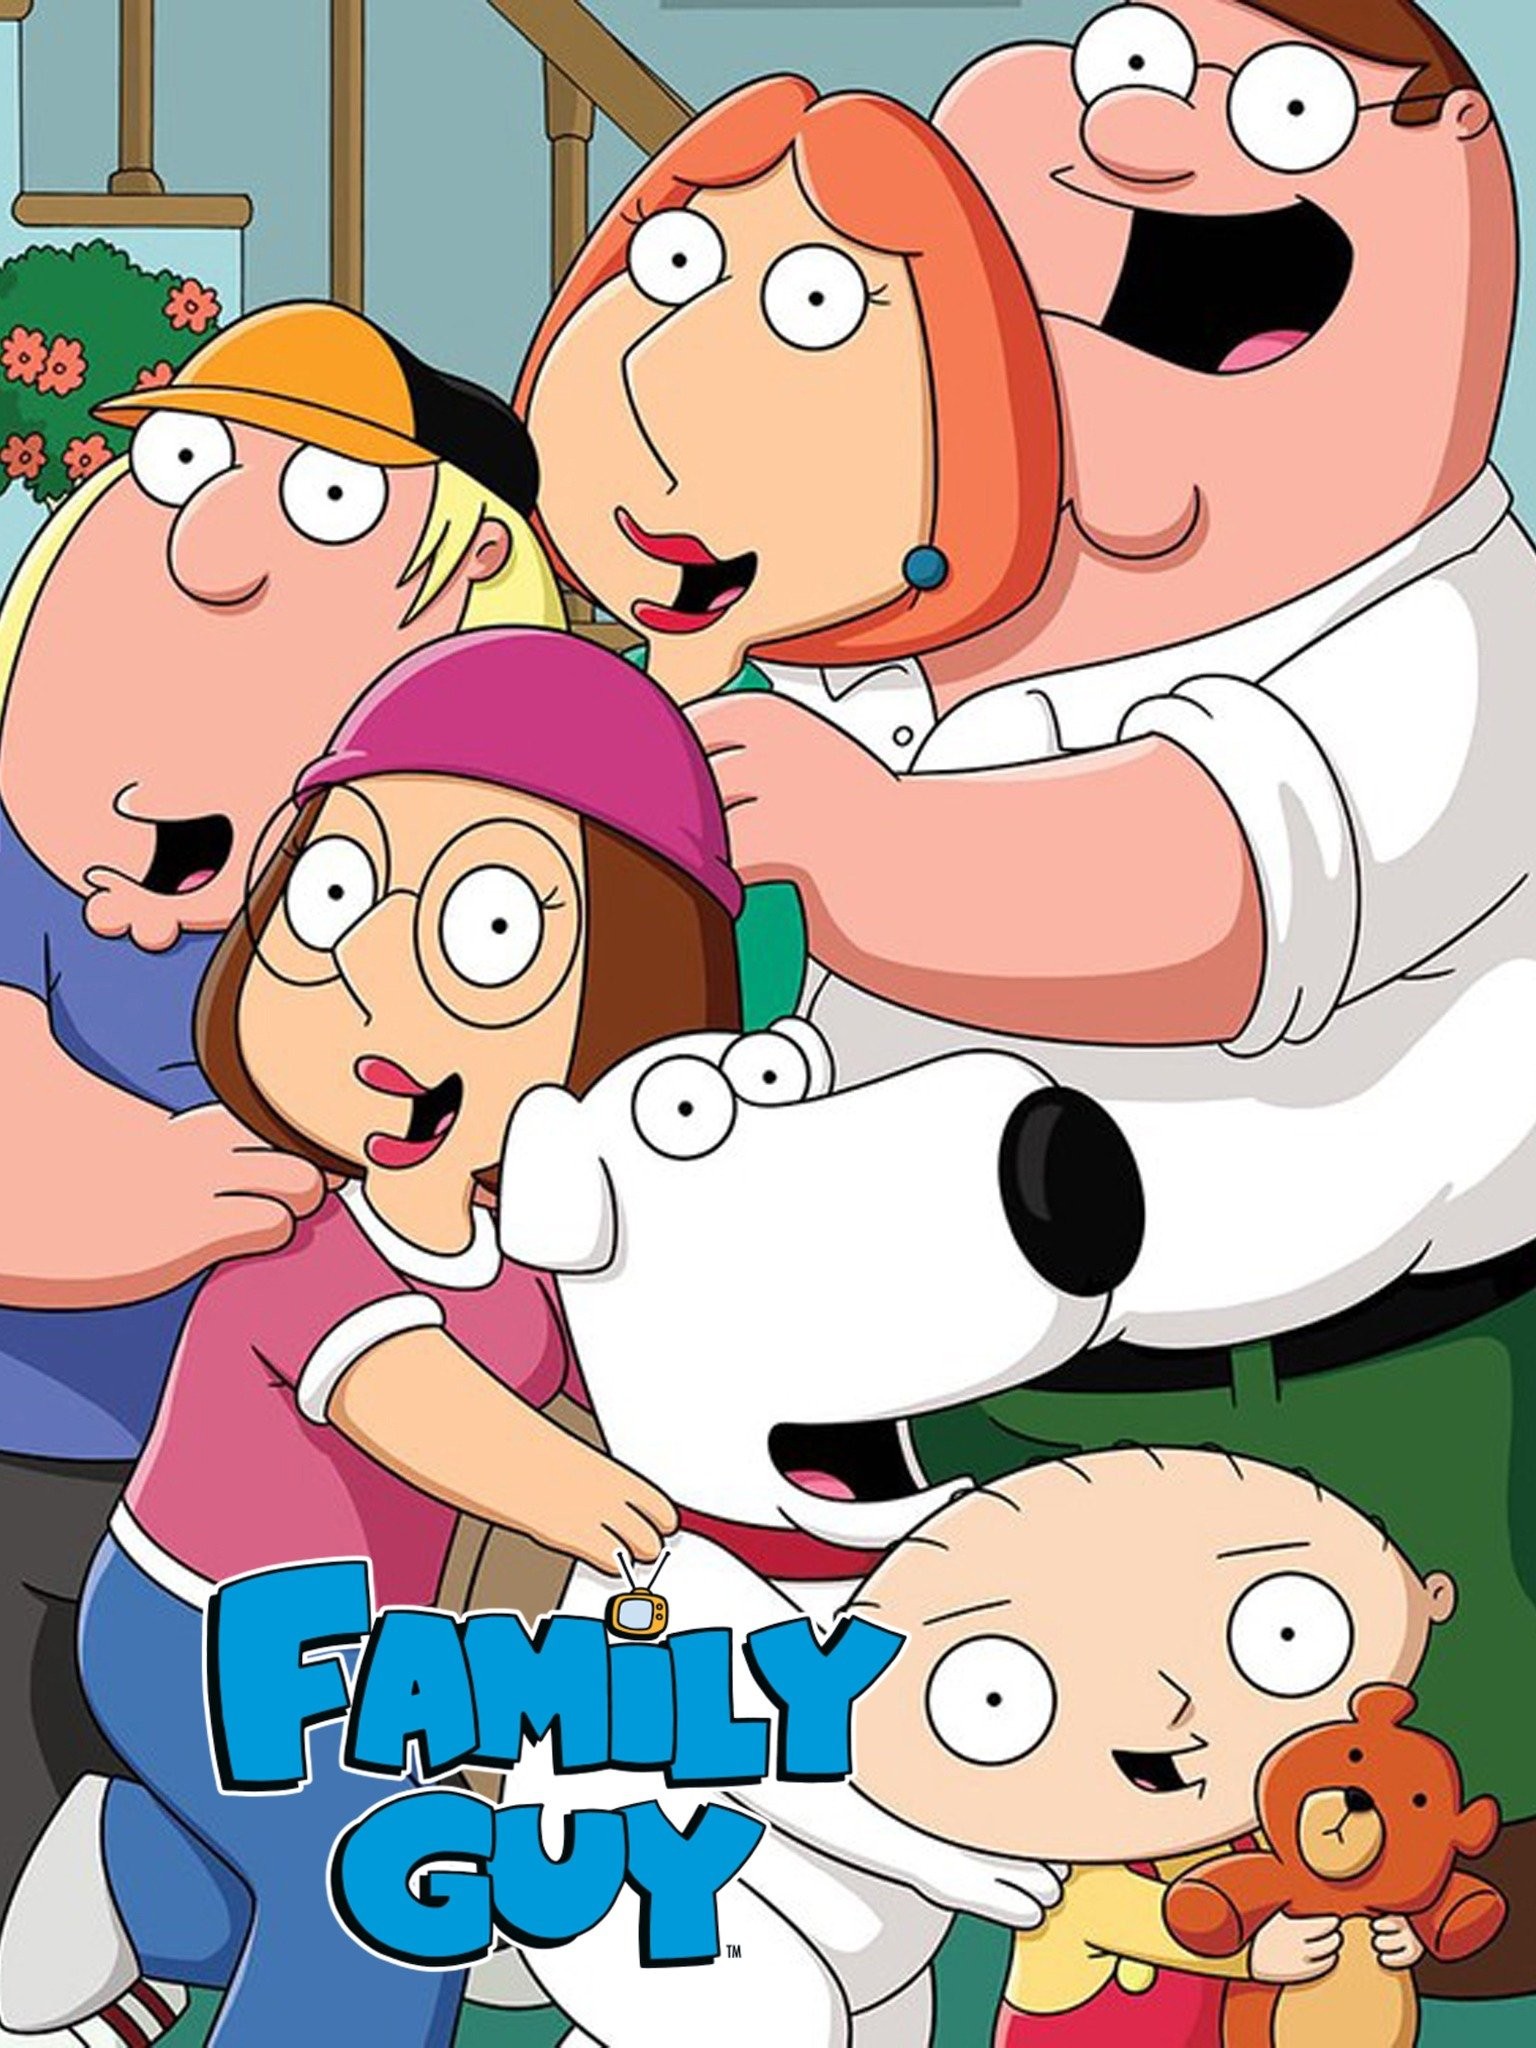 Going Inside Family Guy Online - IGN